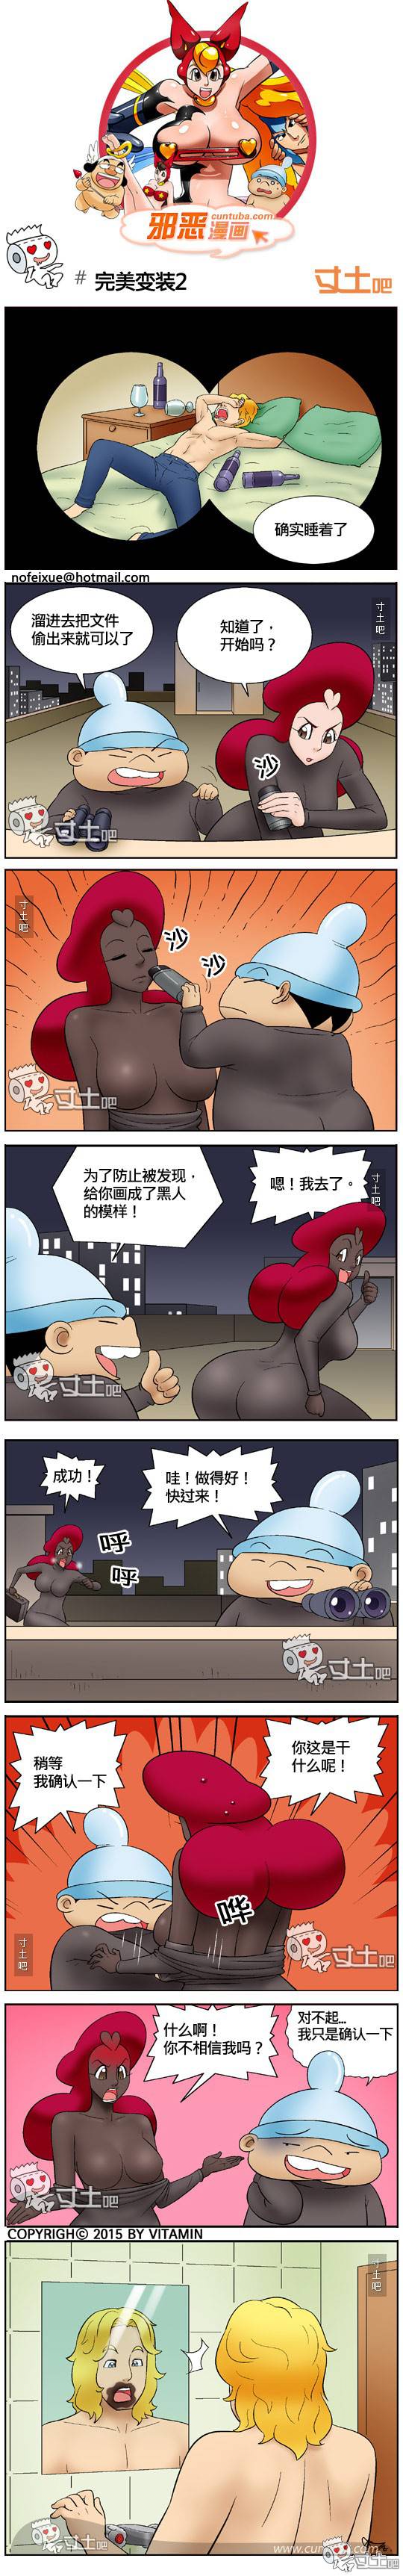 邪恶漫画爆笑囧图第301刊：同学的苦